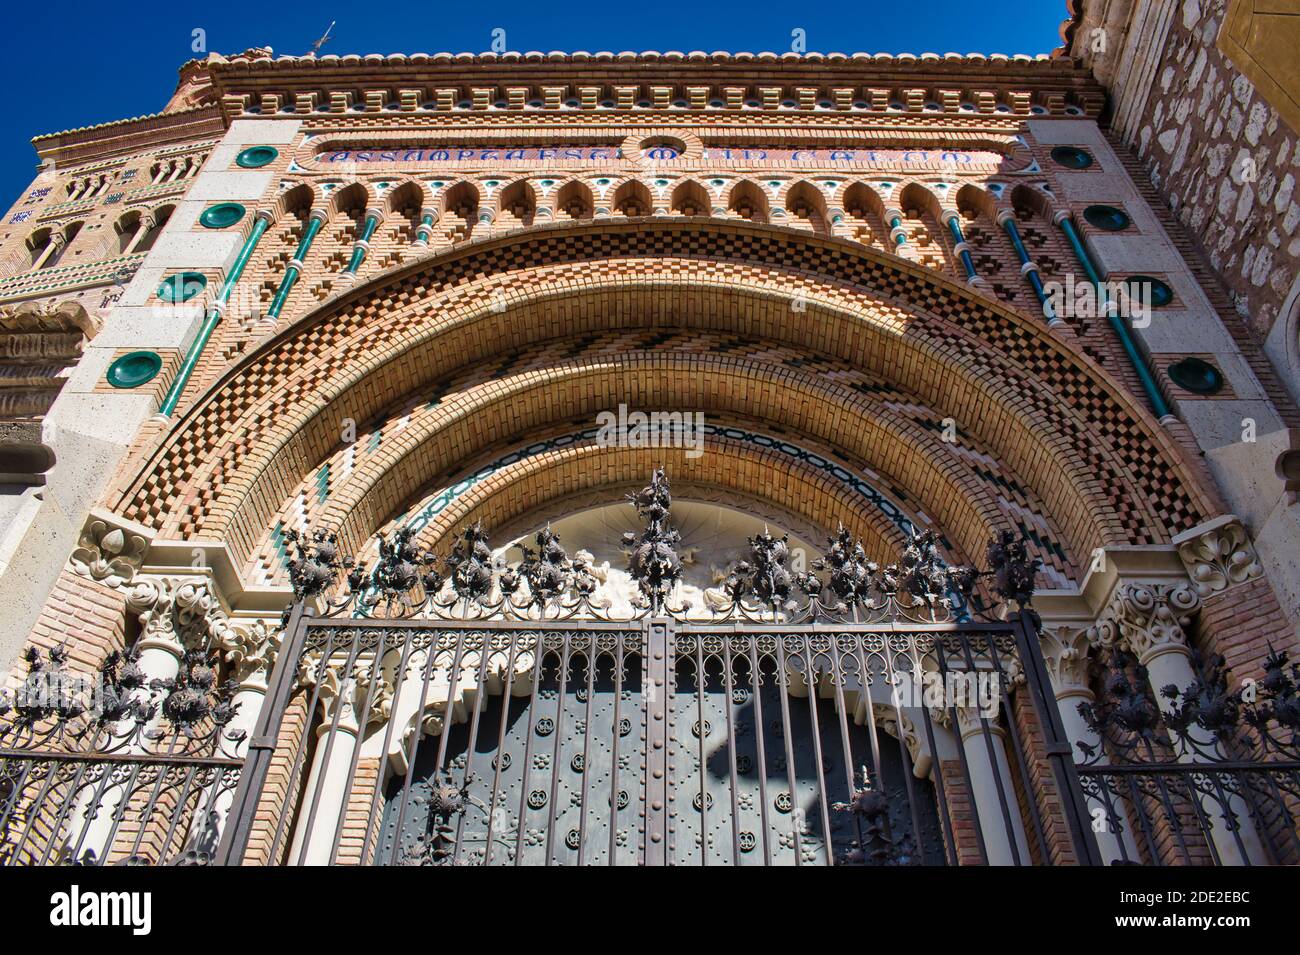 Porte et couverture de la cathédrale de Teruel, style néomudejar, Espagne Banque D'Images